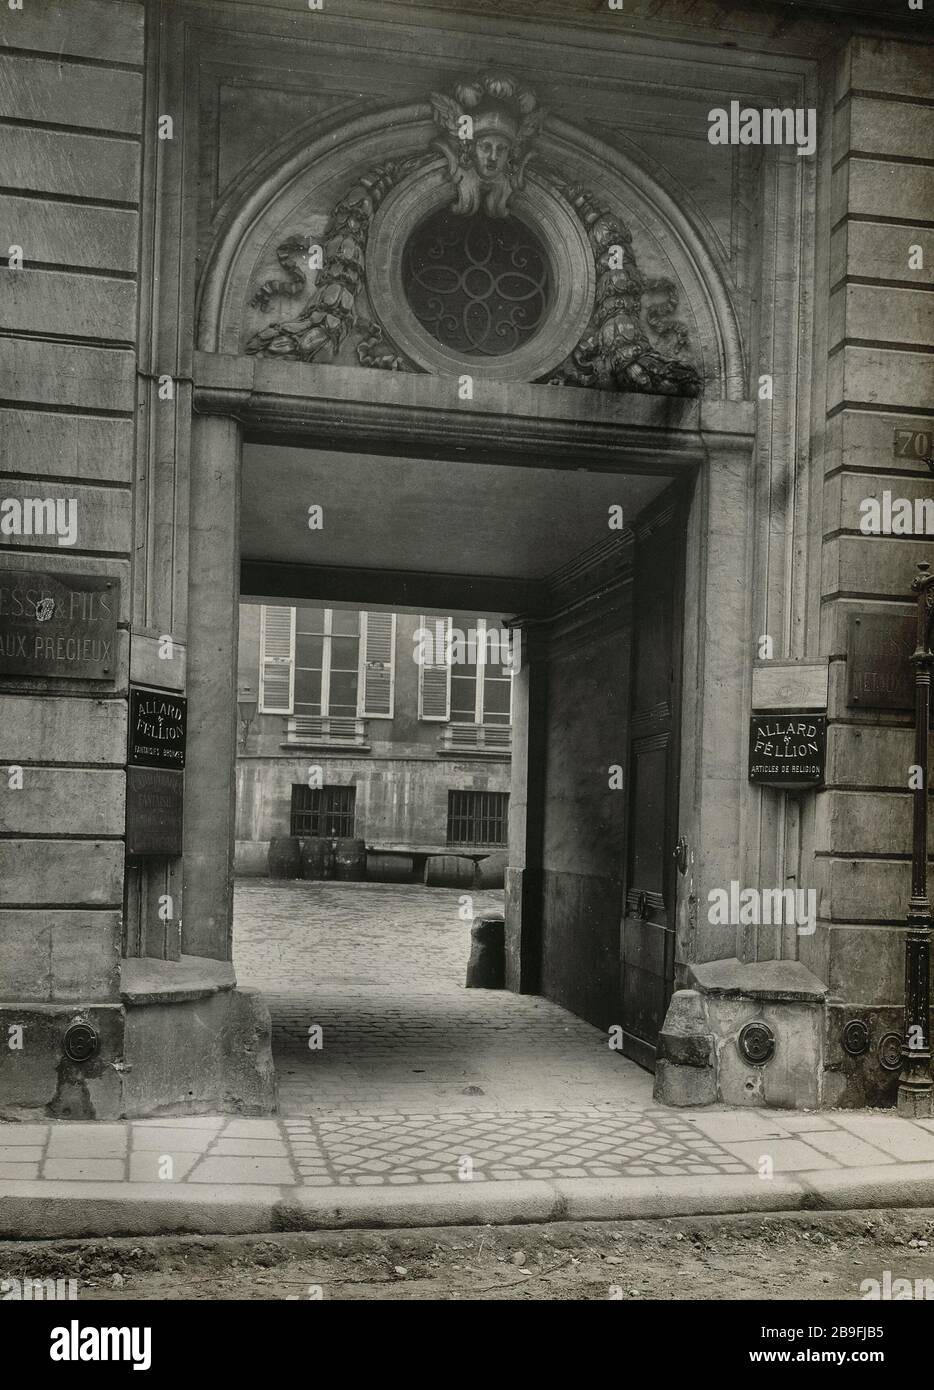 70 RUE DES ARCHIVES 70, rue des Archives. Paris (IIIème arr.). Photographie de Charles Lansiaux (1855-1939). Paris, musée Carnavalet. Stock Photo